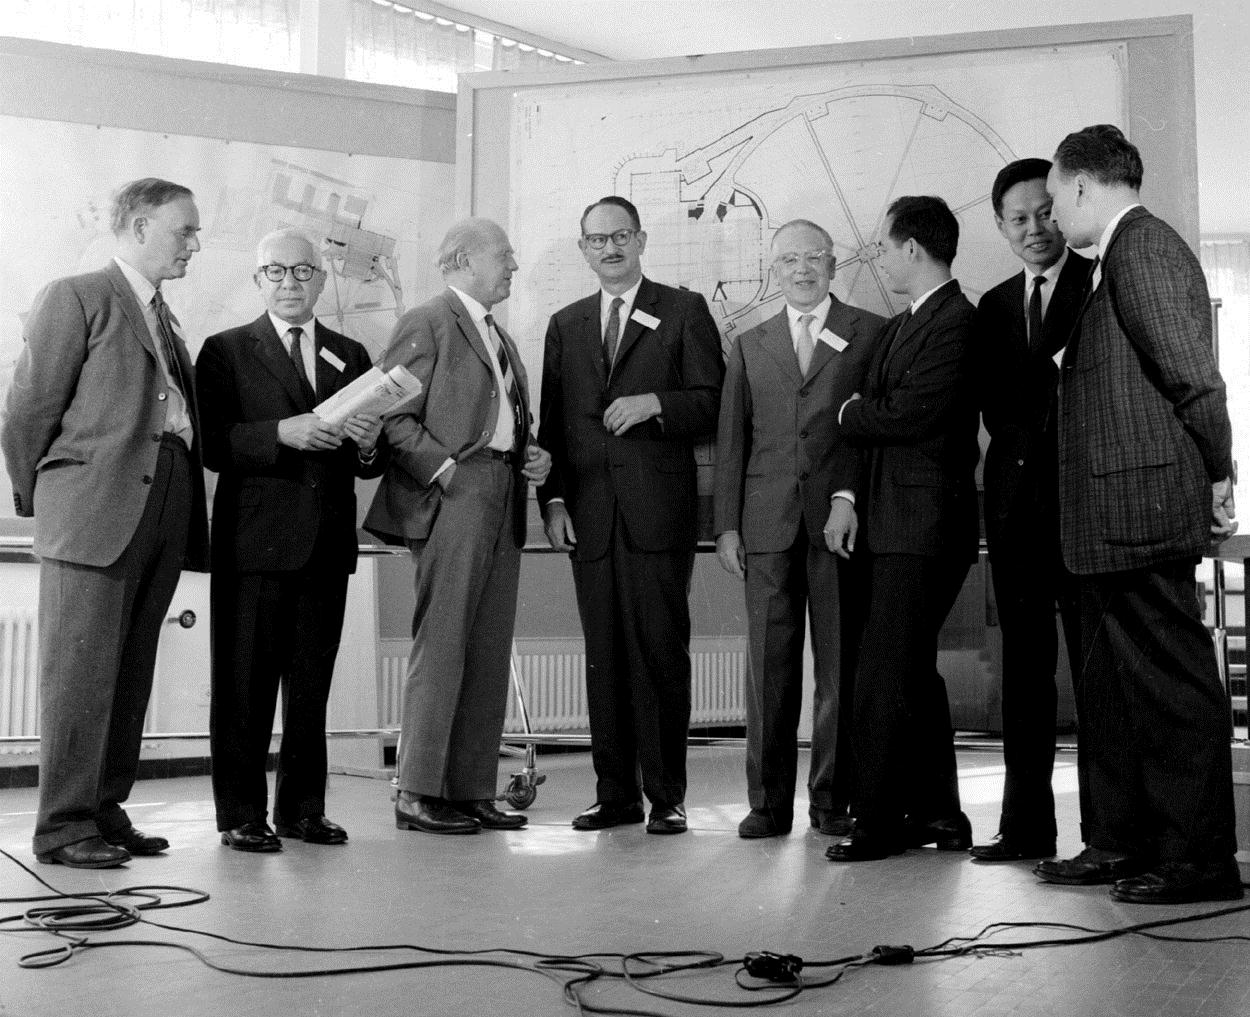 11th International Conference on High Energy Physics Το καλοκαίρι του 1962 το CERN φιλοξενεί το 11 ο παγκόσμιο συνέδριο υψηλών ενεργειών. Η καρδιά της σωματιδιακής φυσικής κτυπάει πλέον στην Γενεύη.